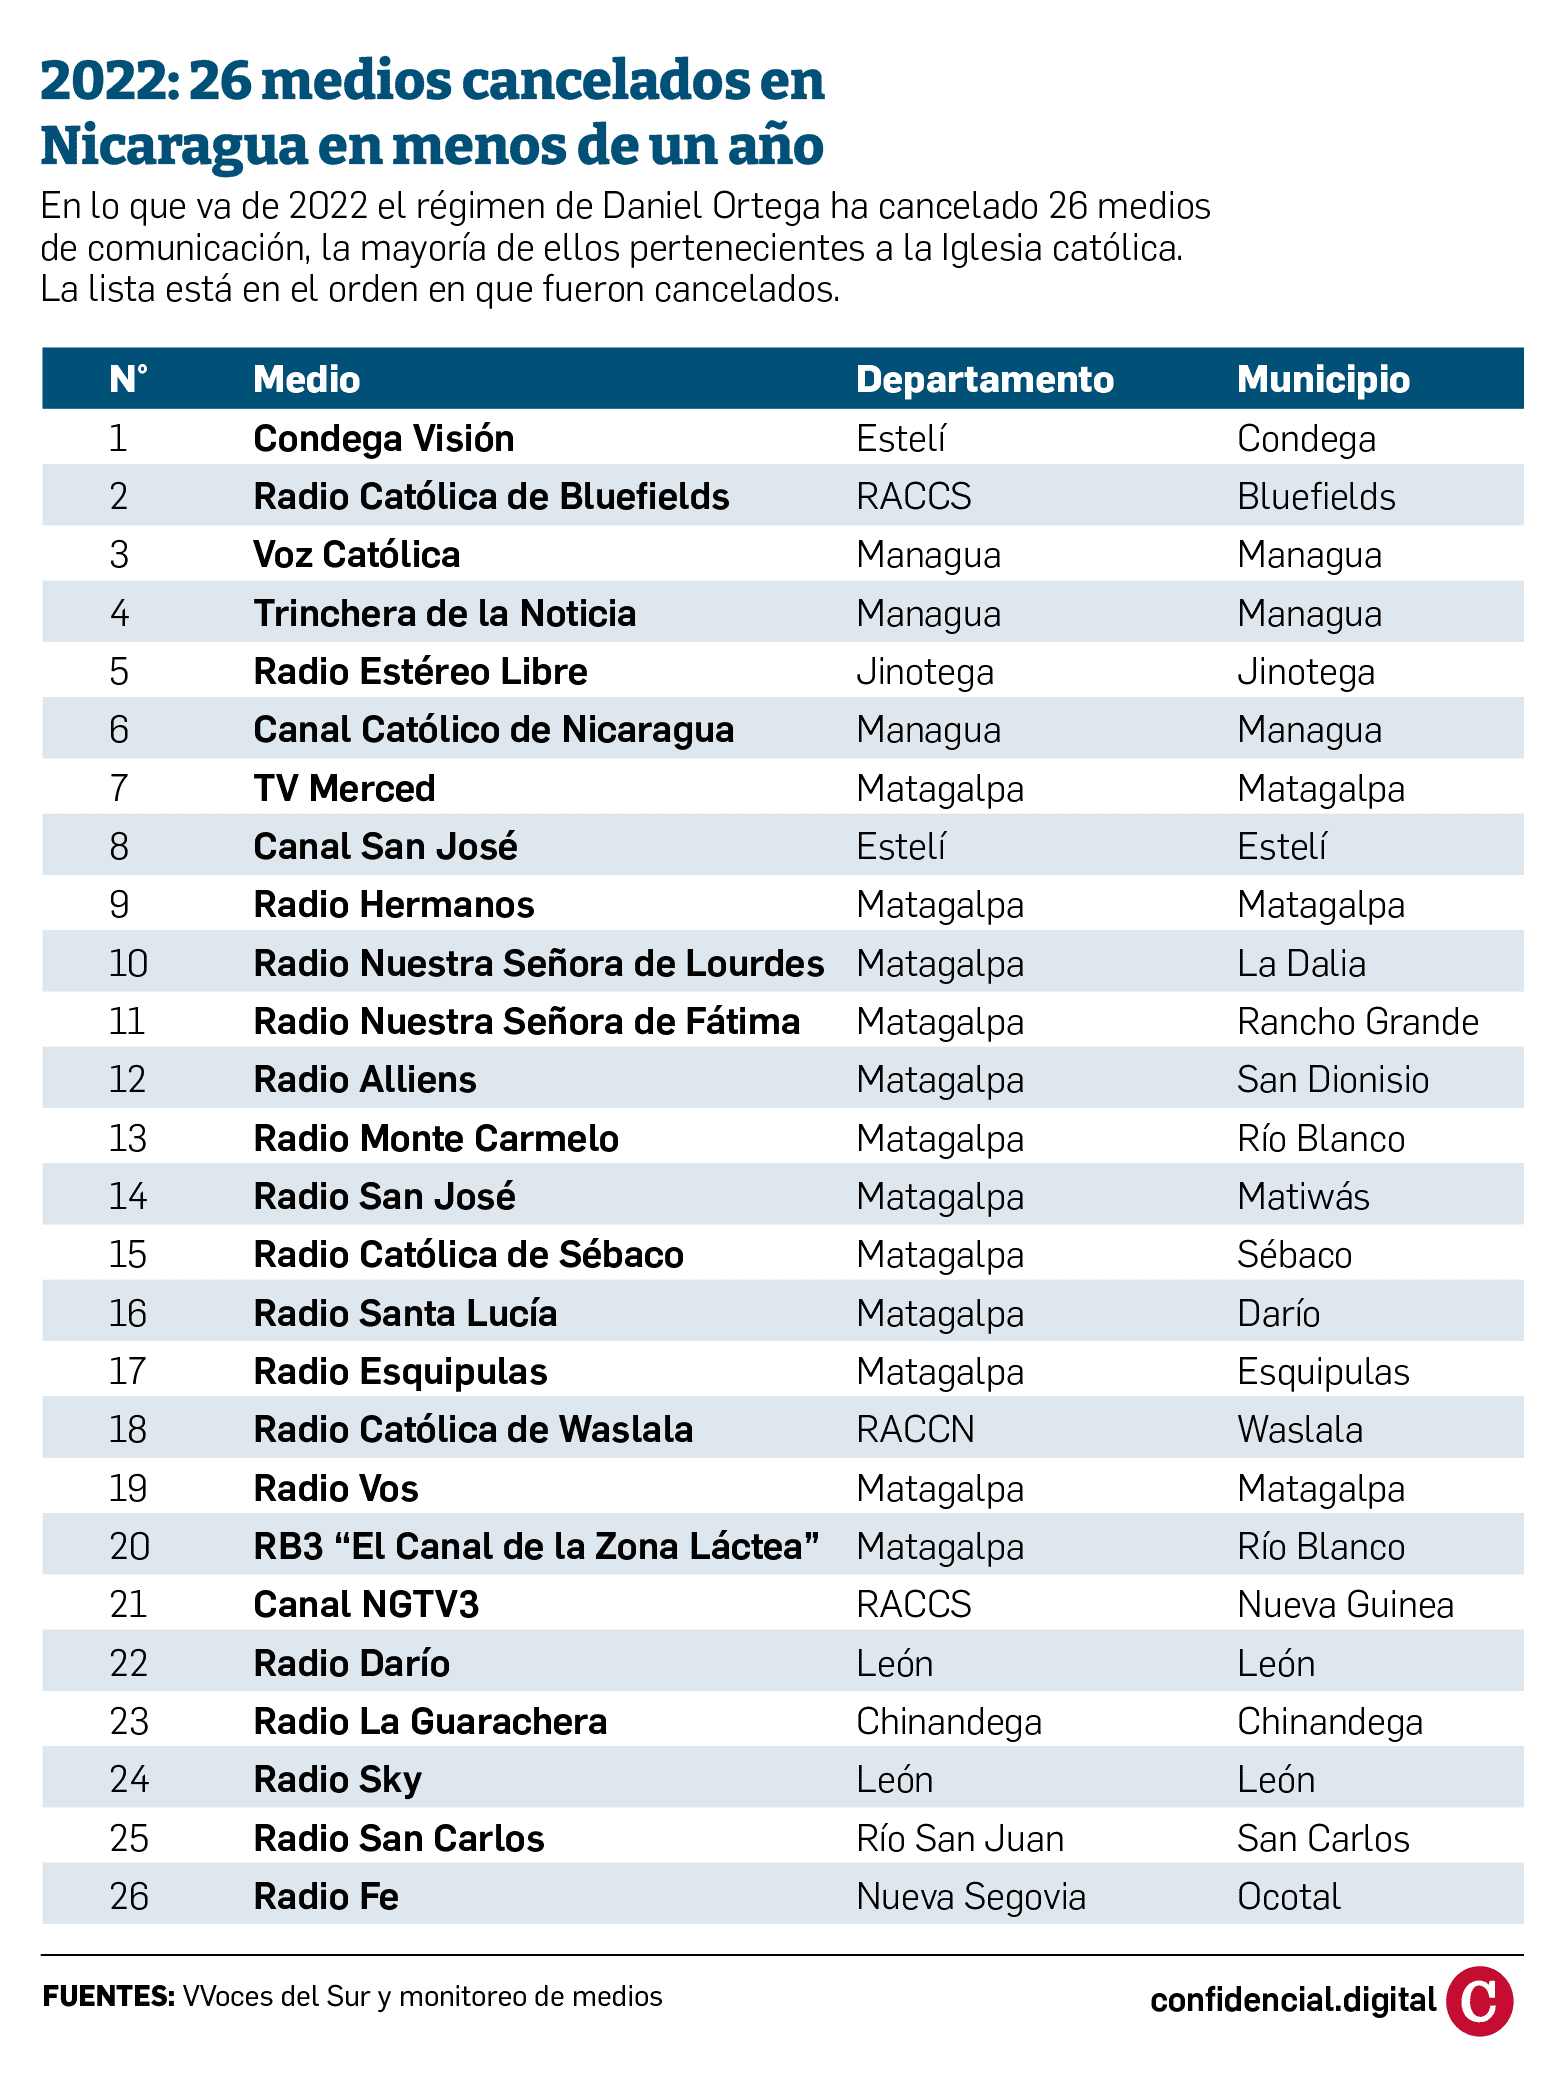 26 medios de comunicación cerrados en 2022 en Nicaragua